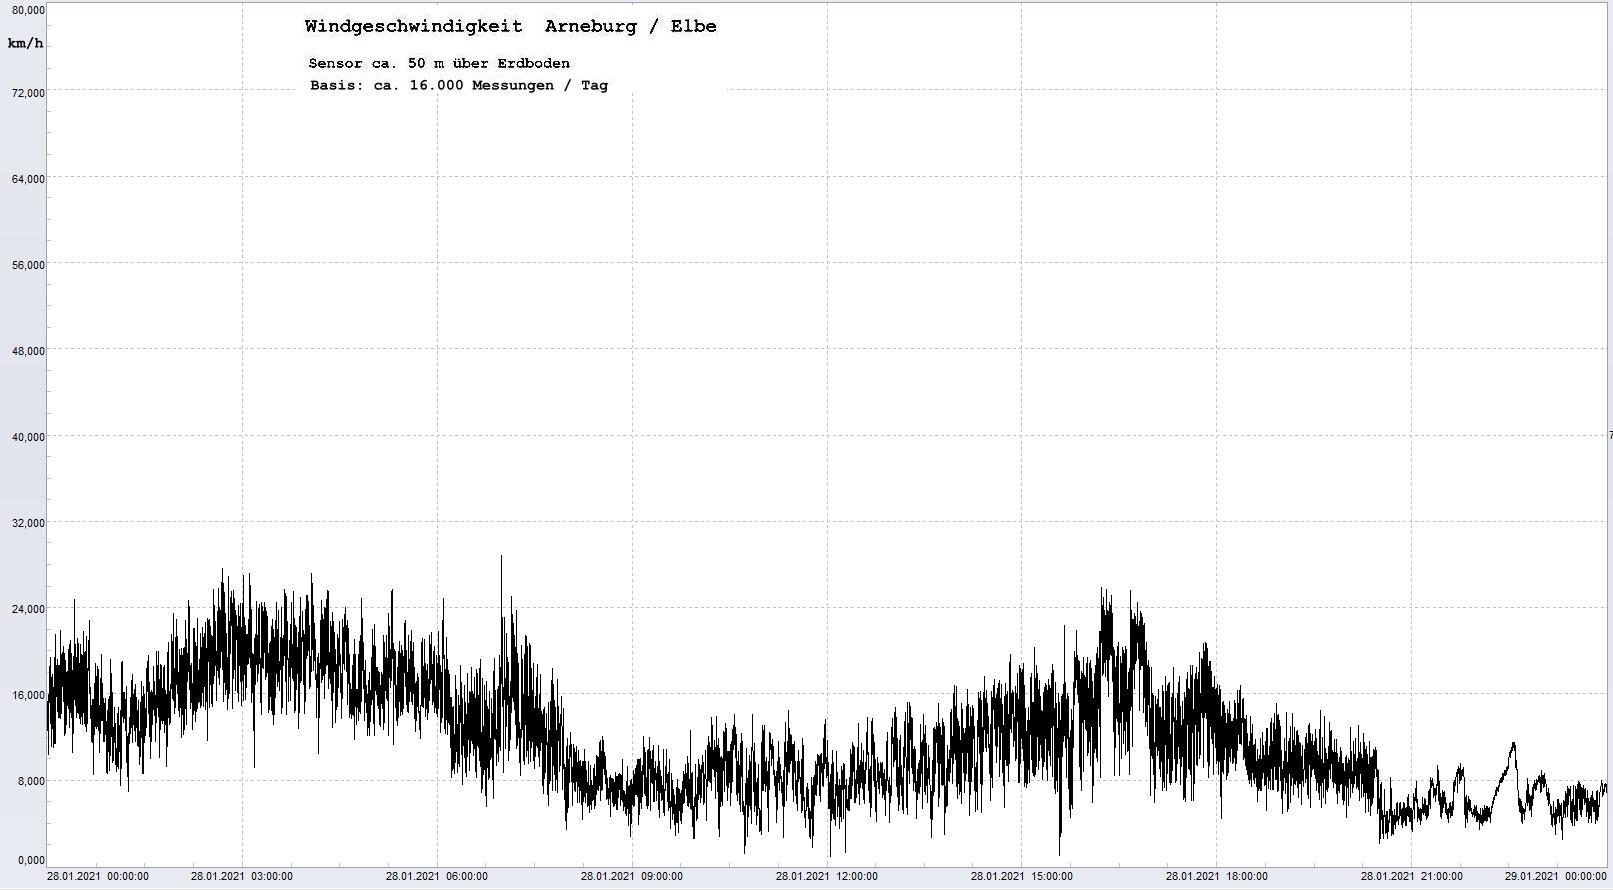 Arneburg Tages-Diagramm Winddaten, 28.01.2021
  Histogramm, Sensor auf Gebude, ca. 50 m ber Erdboden, Basis: 5s-Aufzeichnung